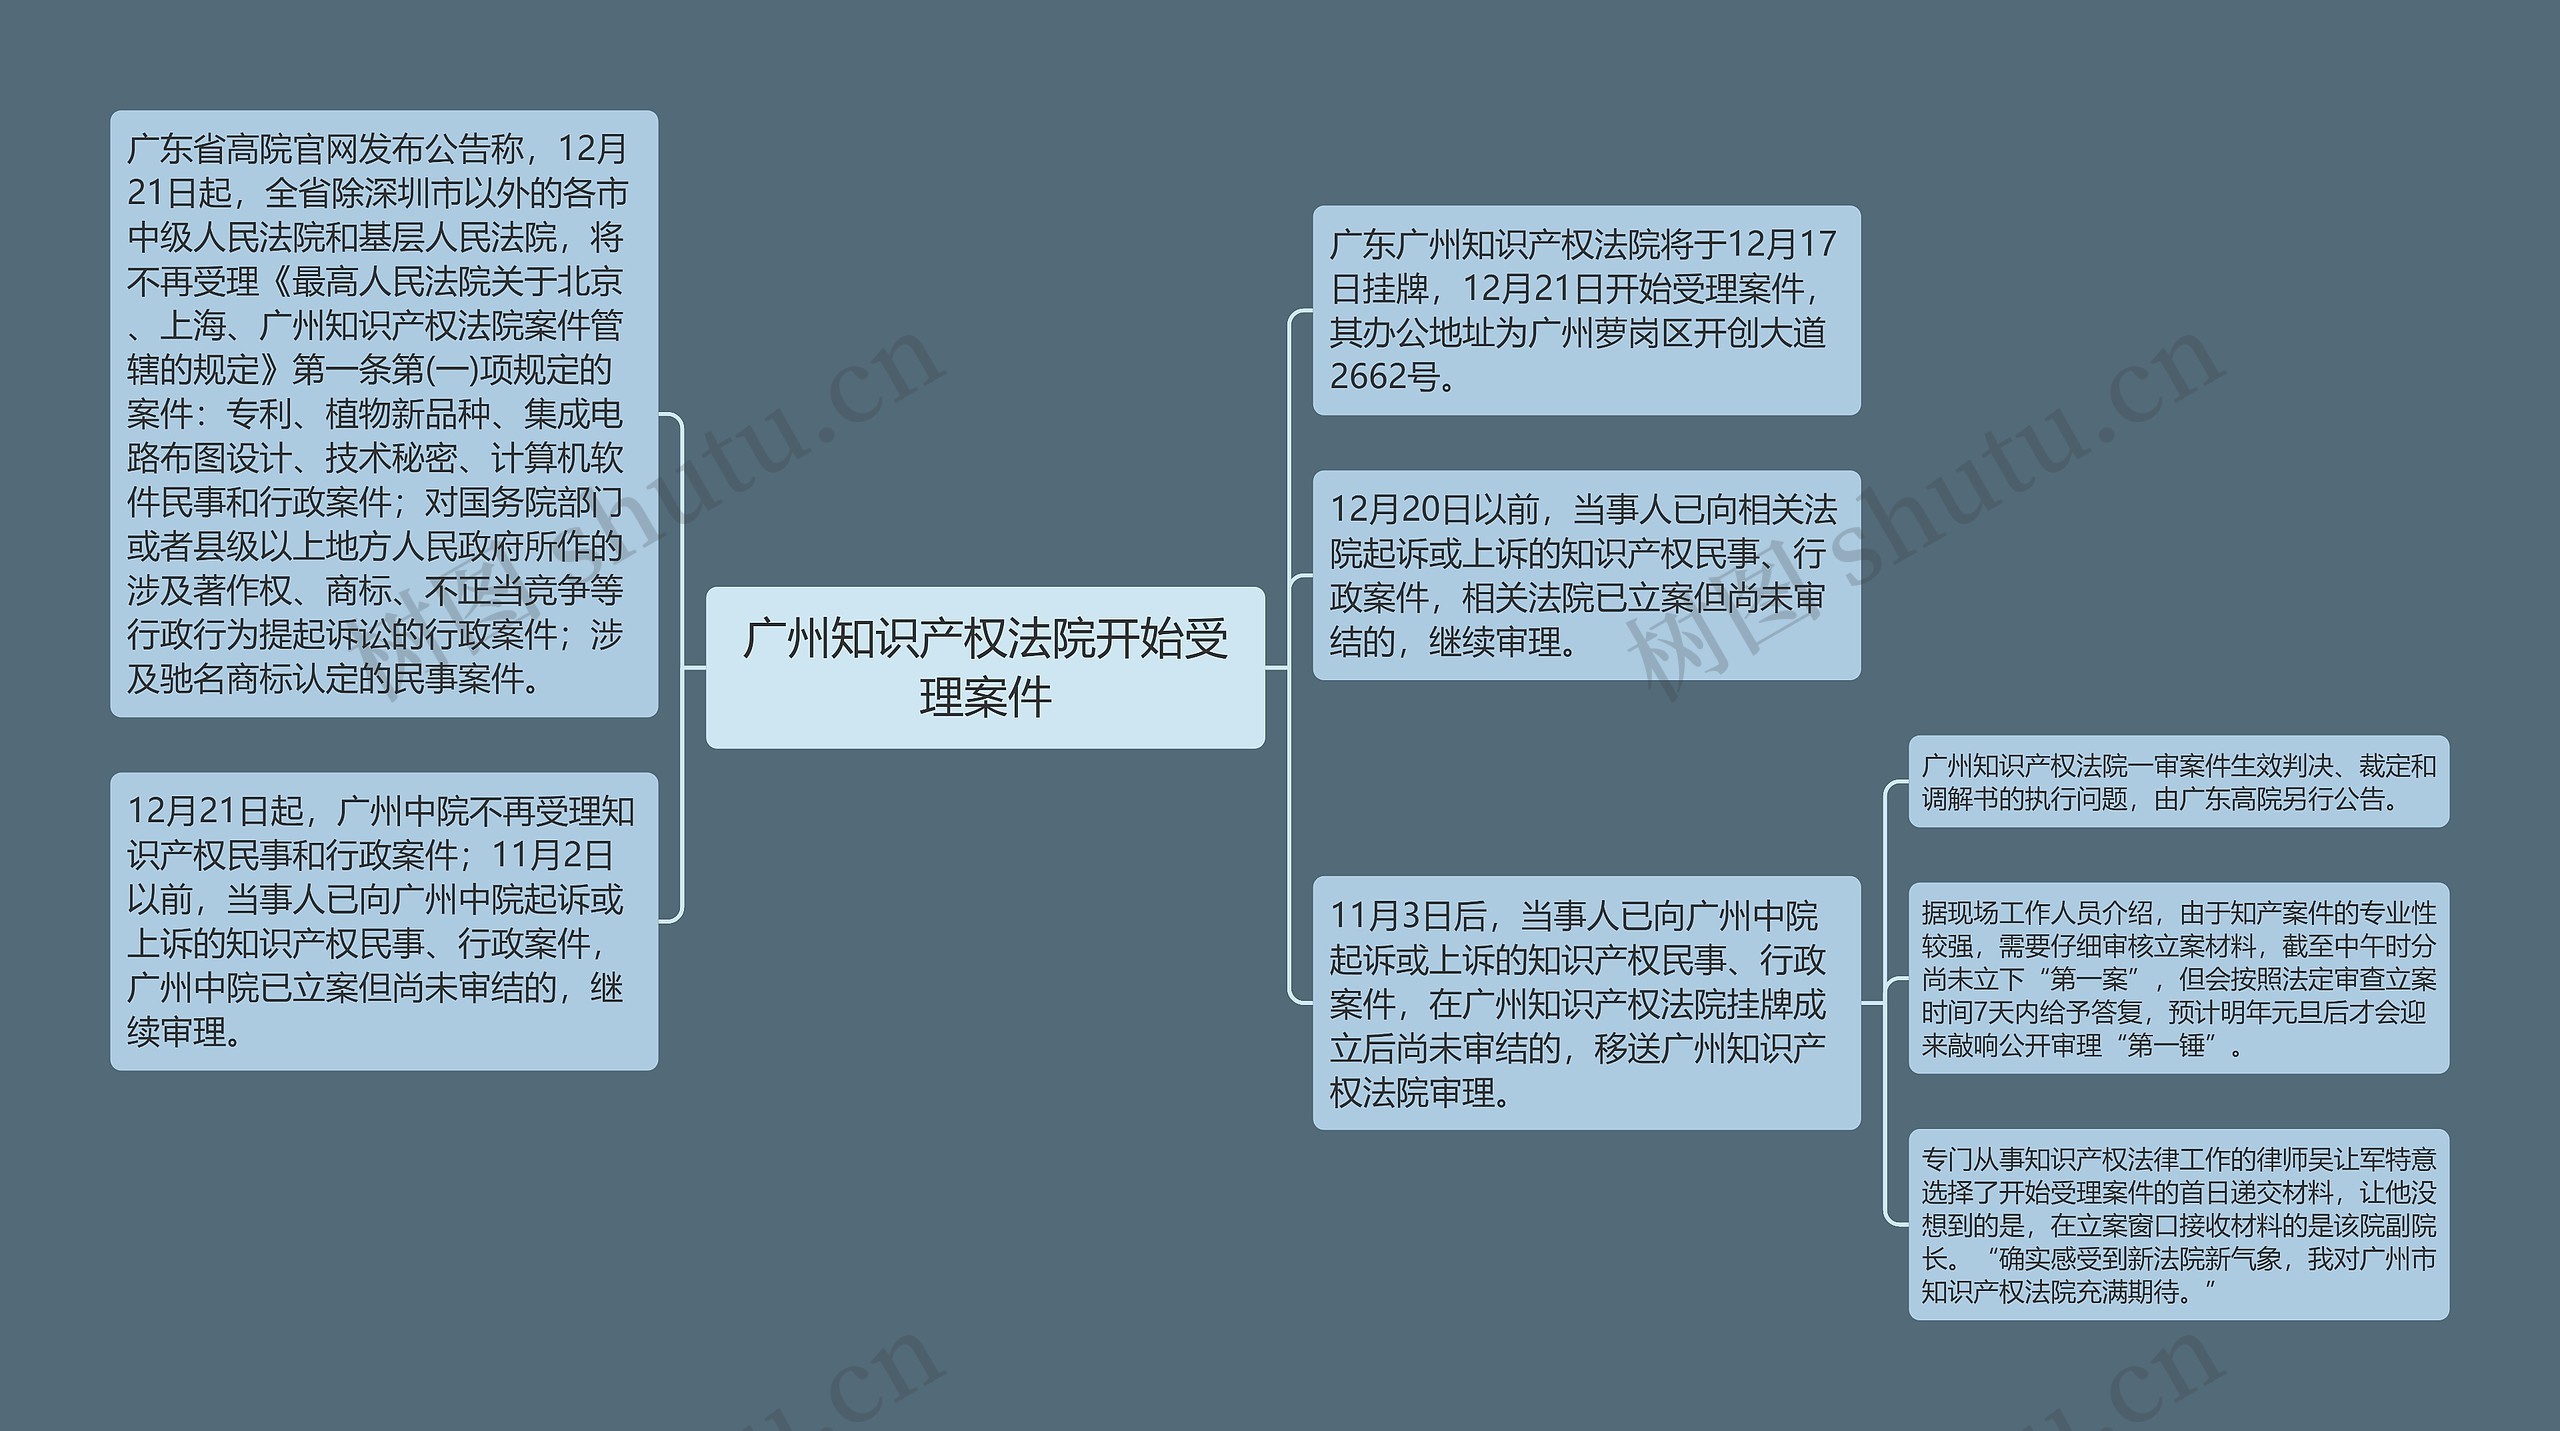 广州知识产权法院开始受理案件